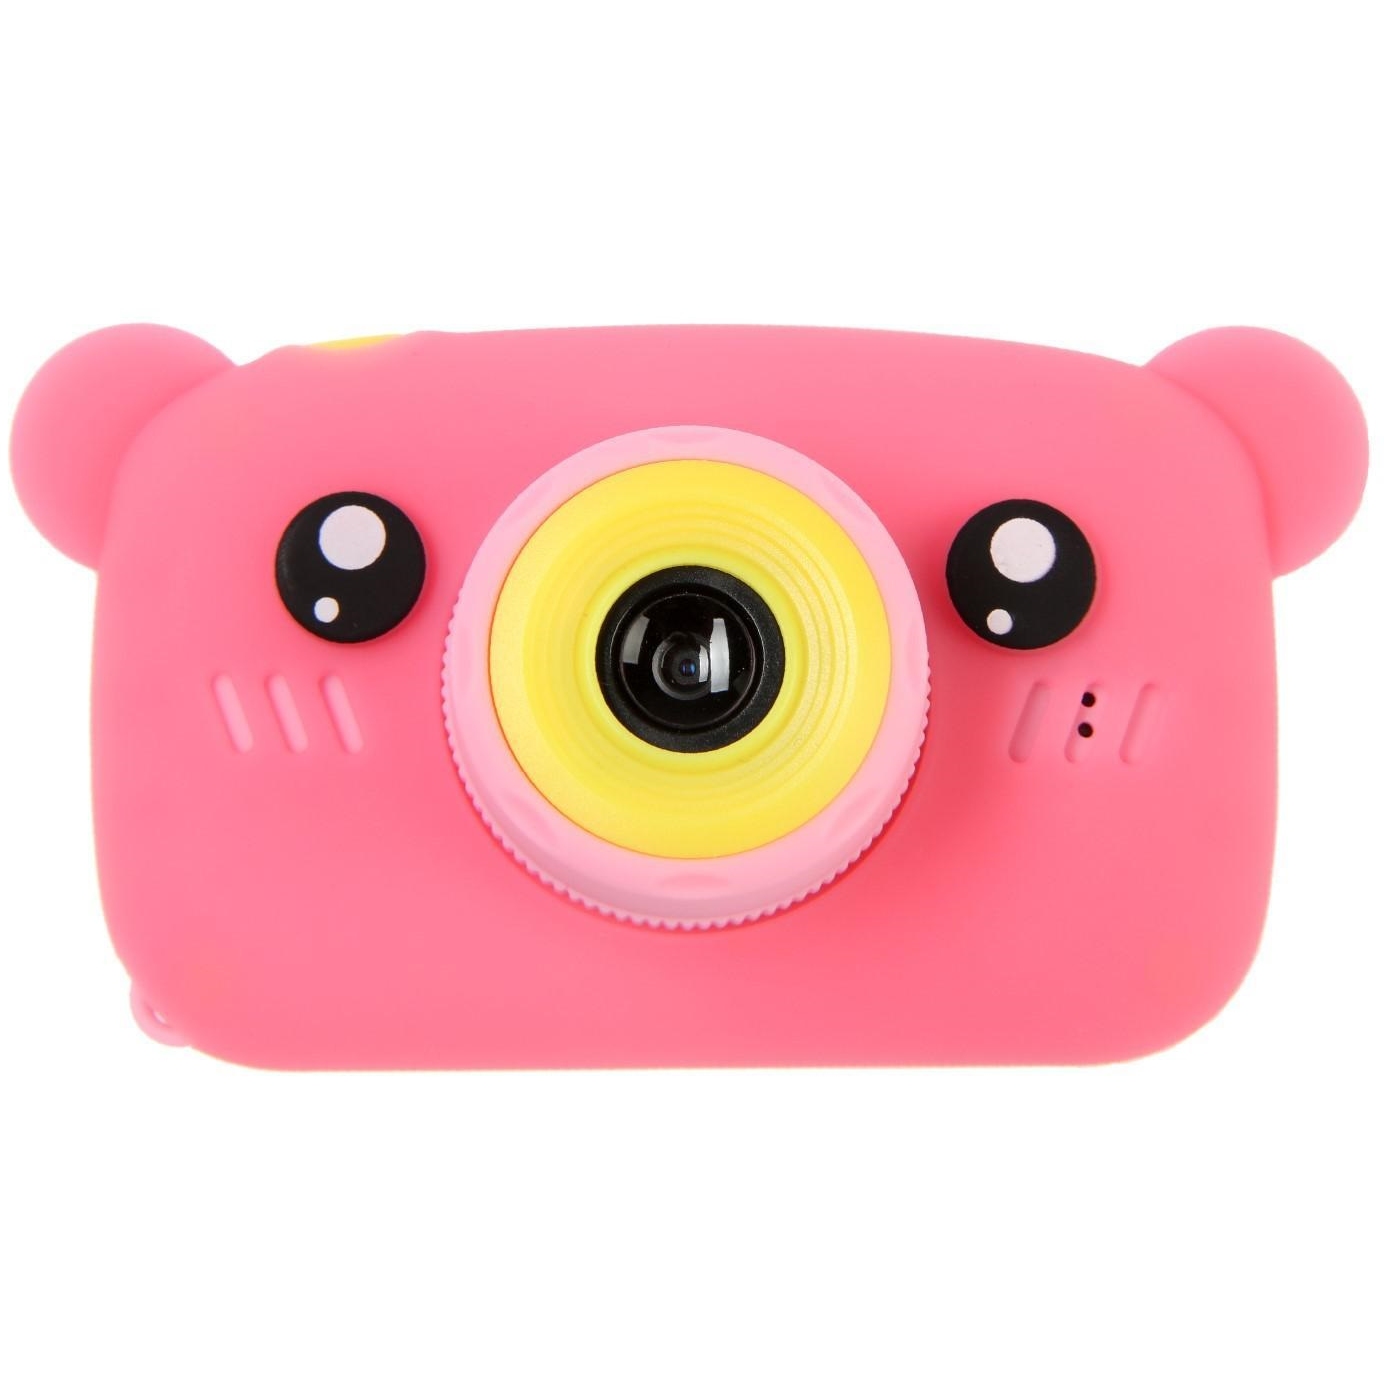 Детский цифровой фотоаппарат kids fun camera bear "мишка", модель 1252682, розовый 5402503